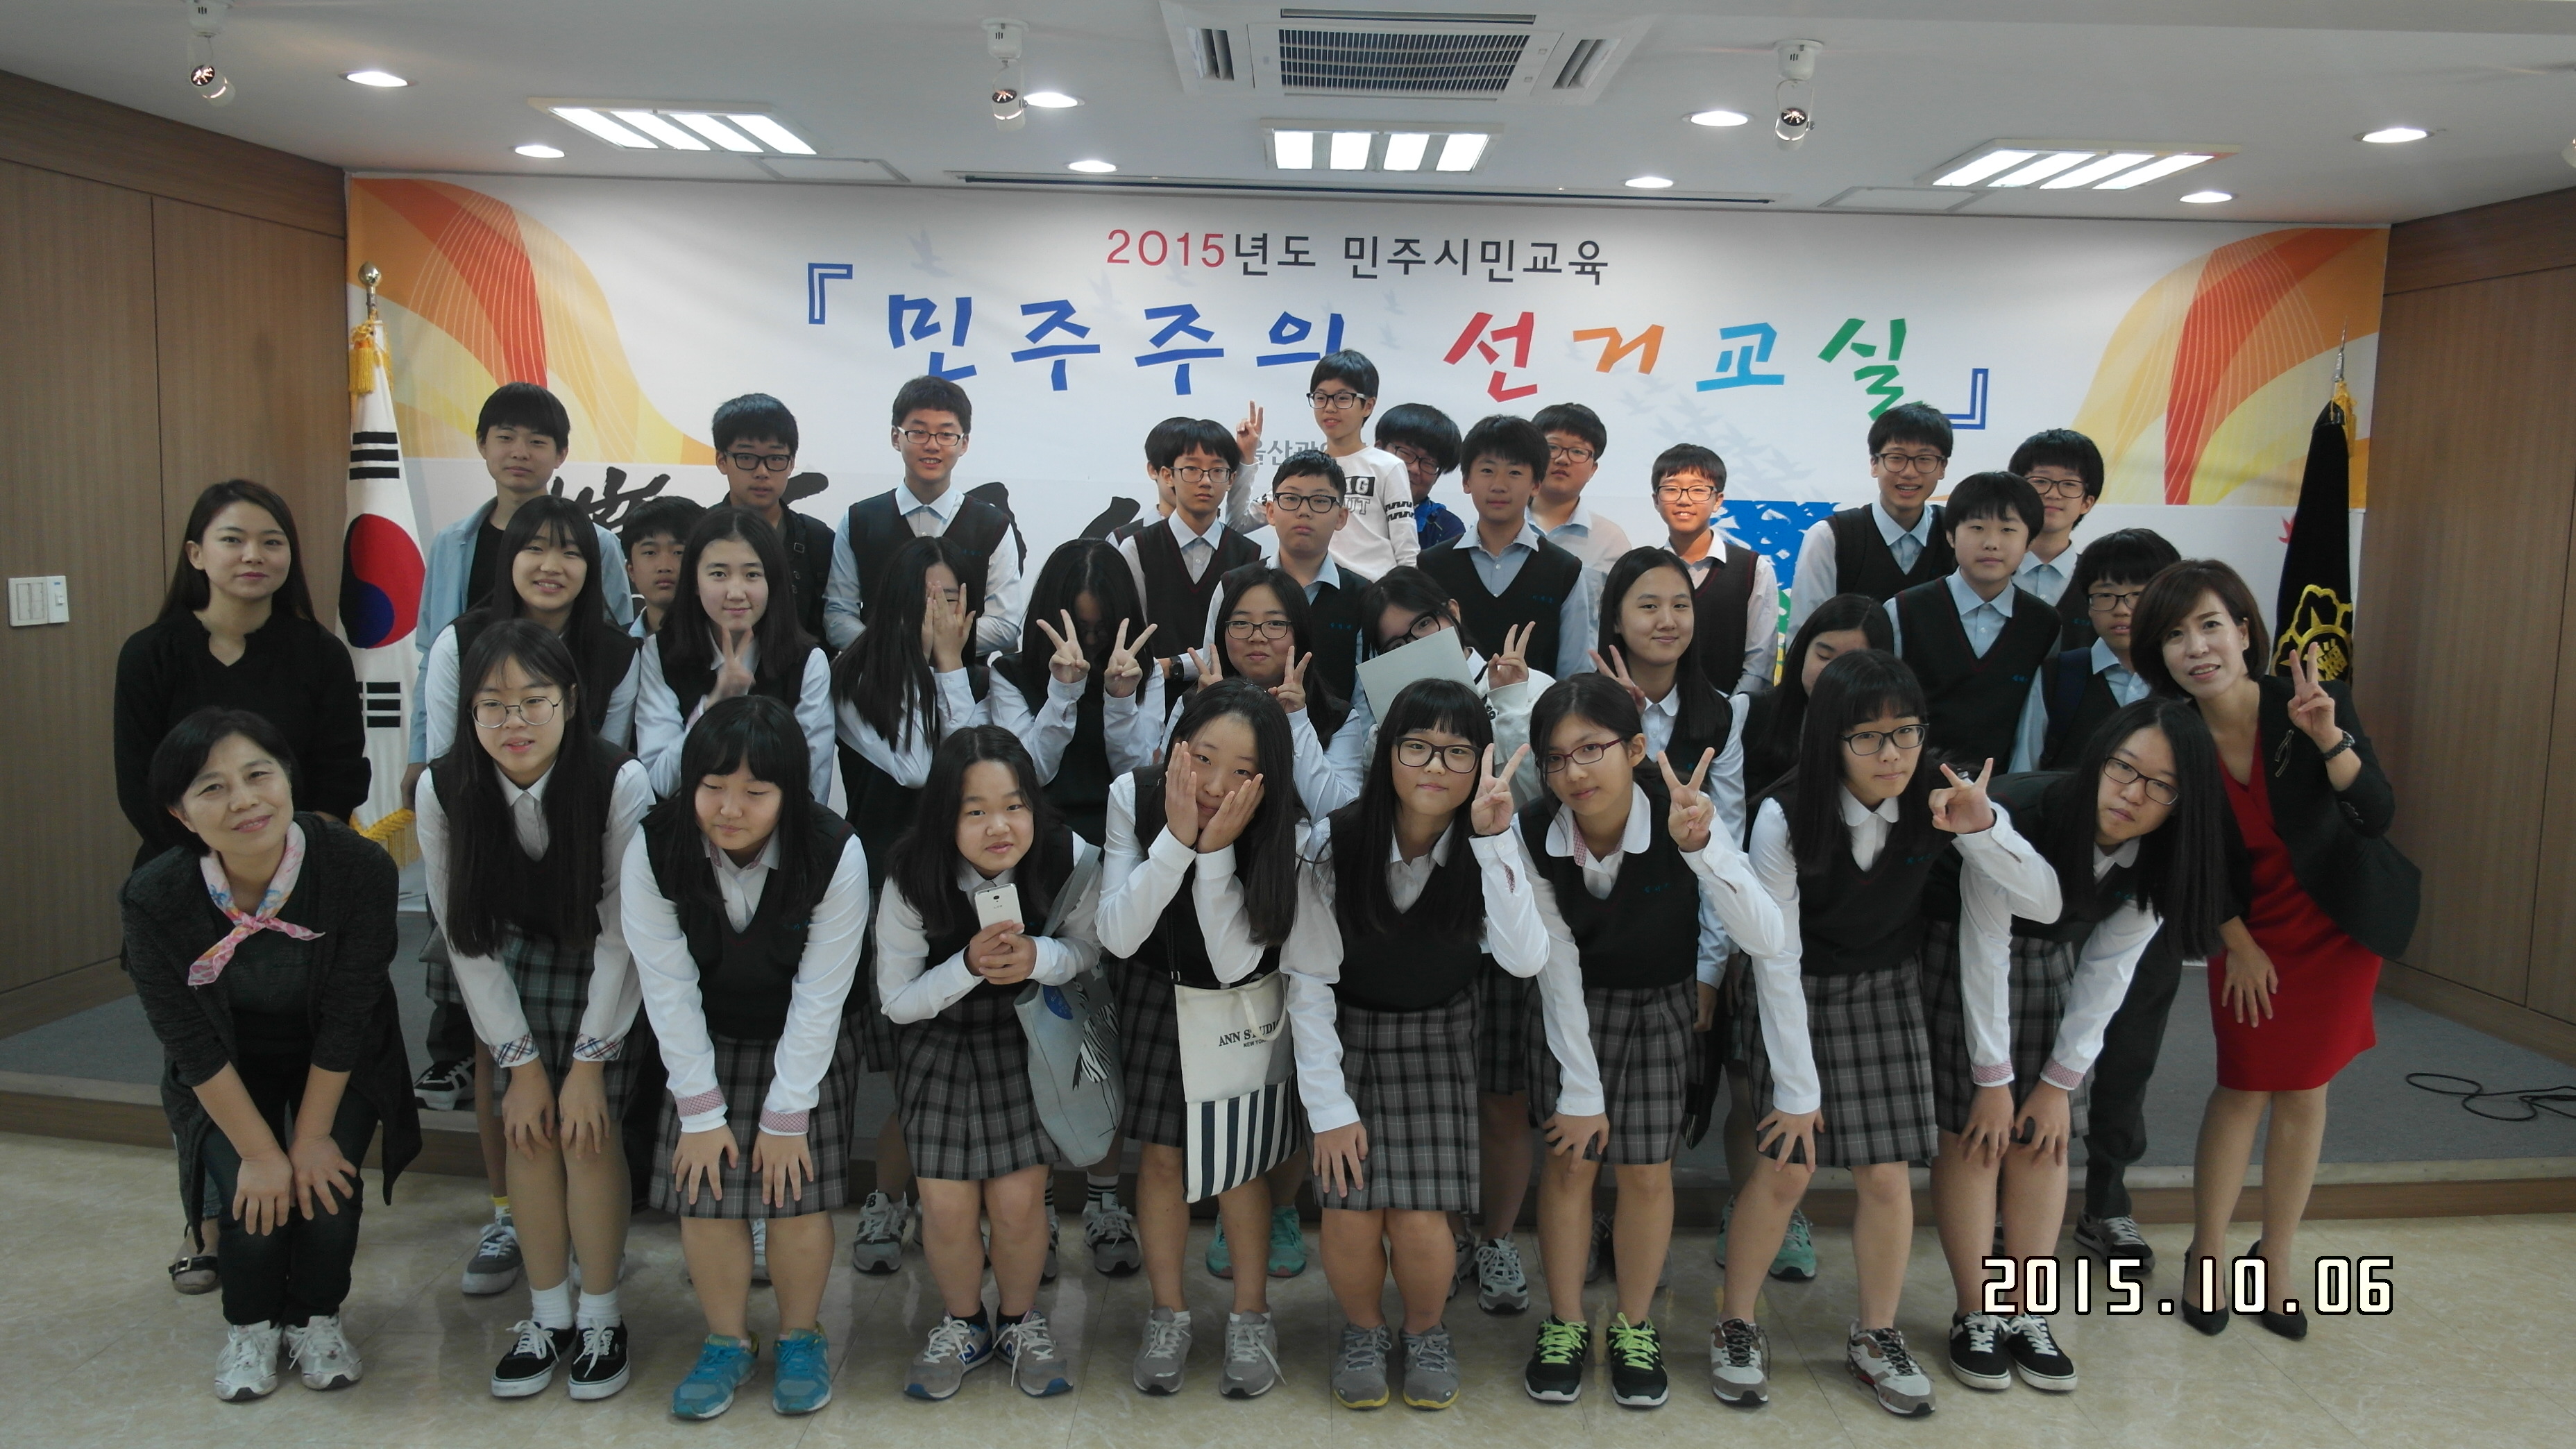 민주주의 선거교실 운영 첫날 천상중학교 1학년 학생 단체사진